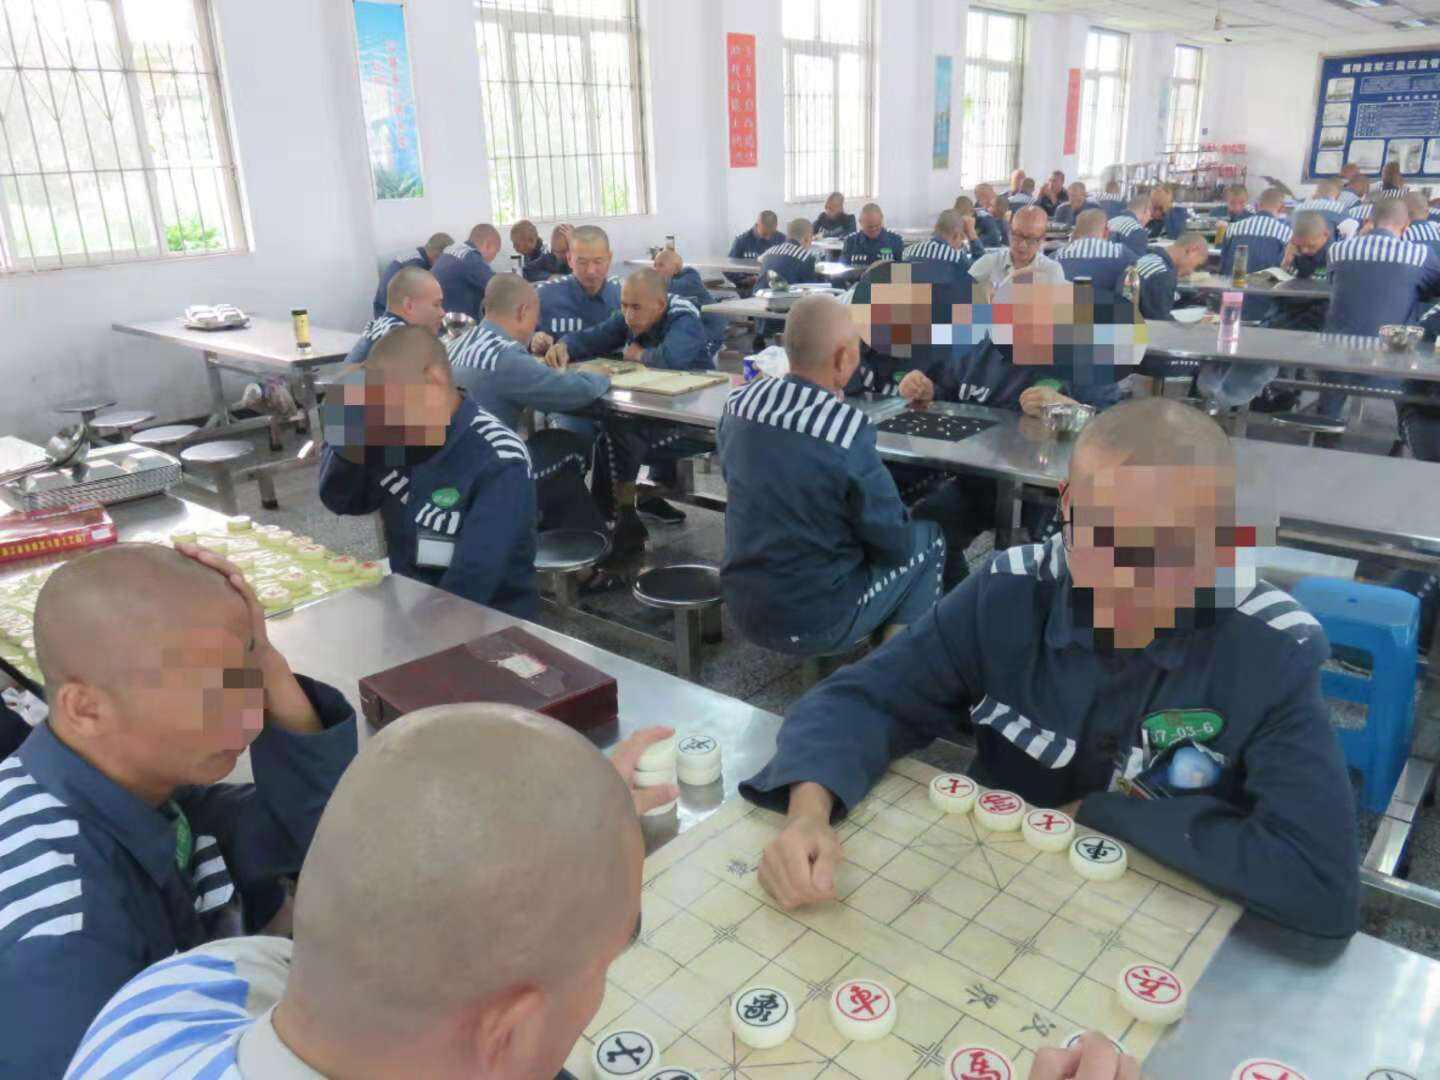 聊城监狱服刑人员图片